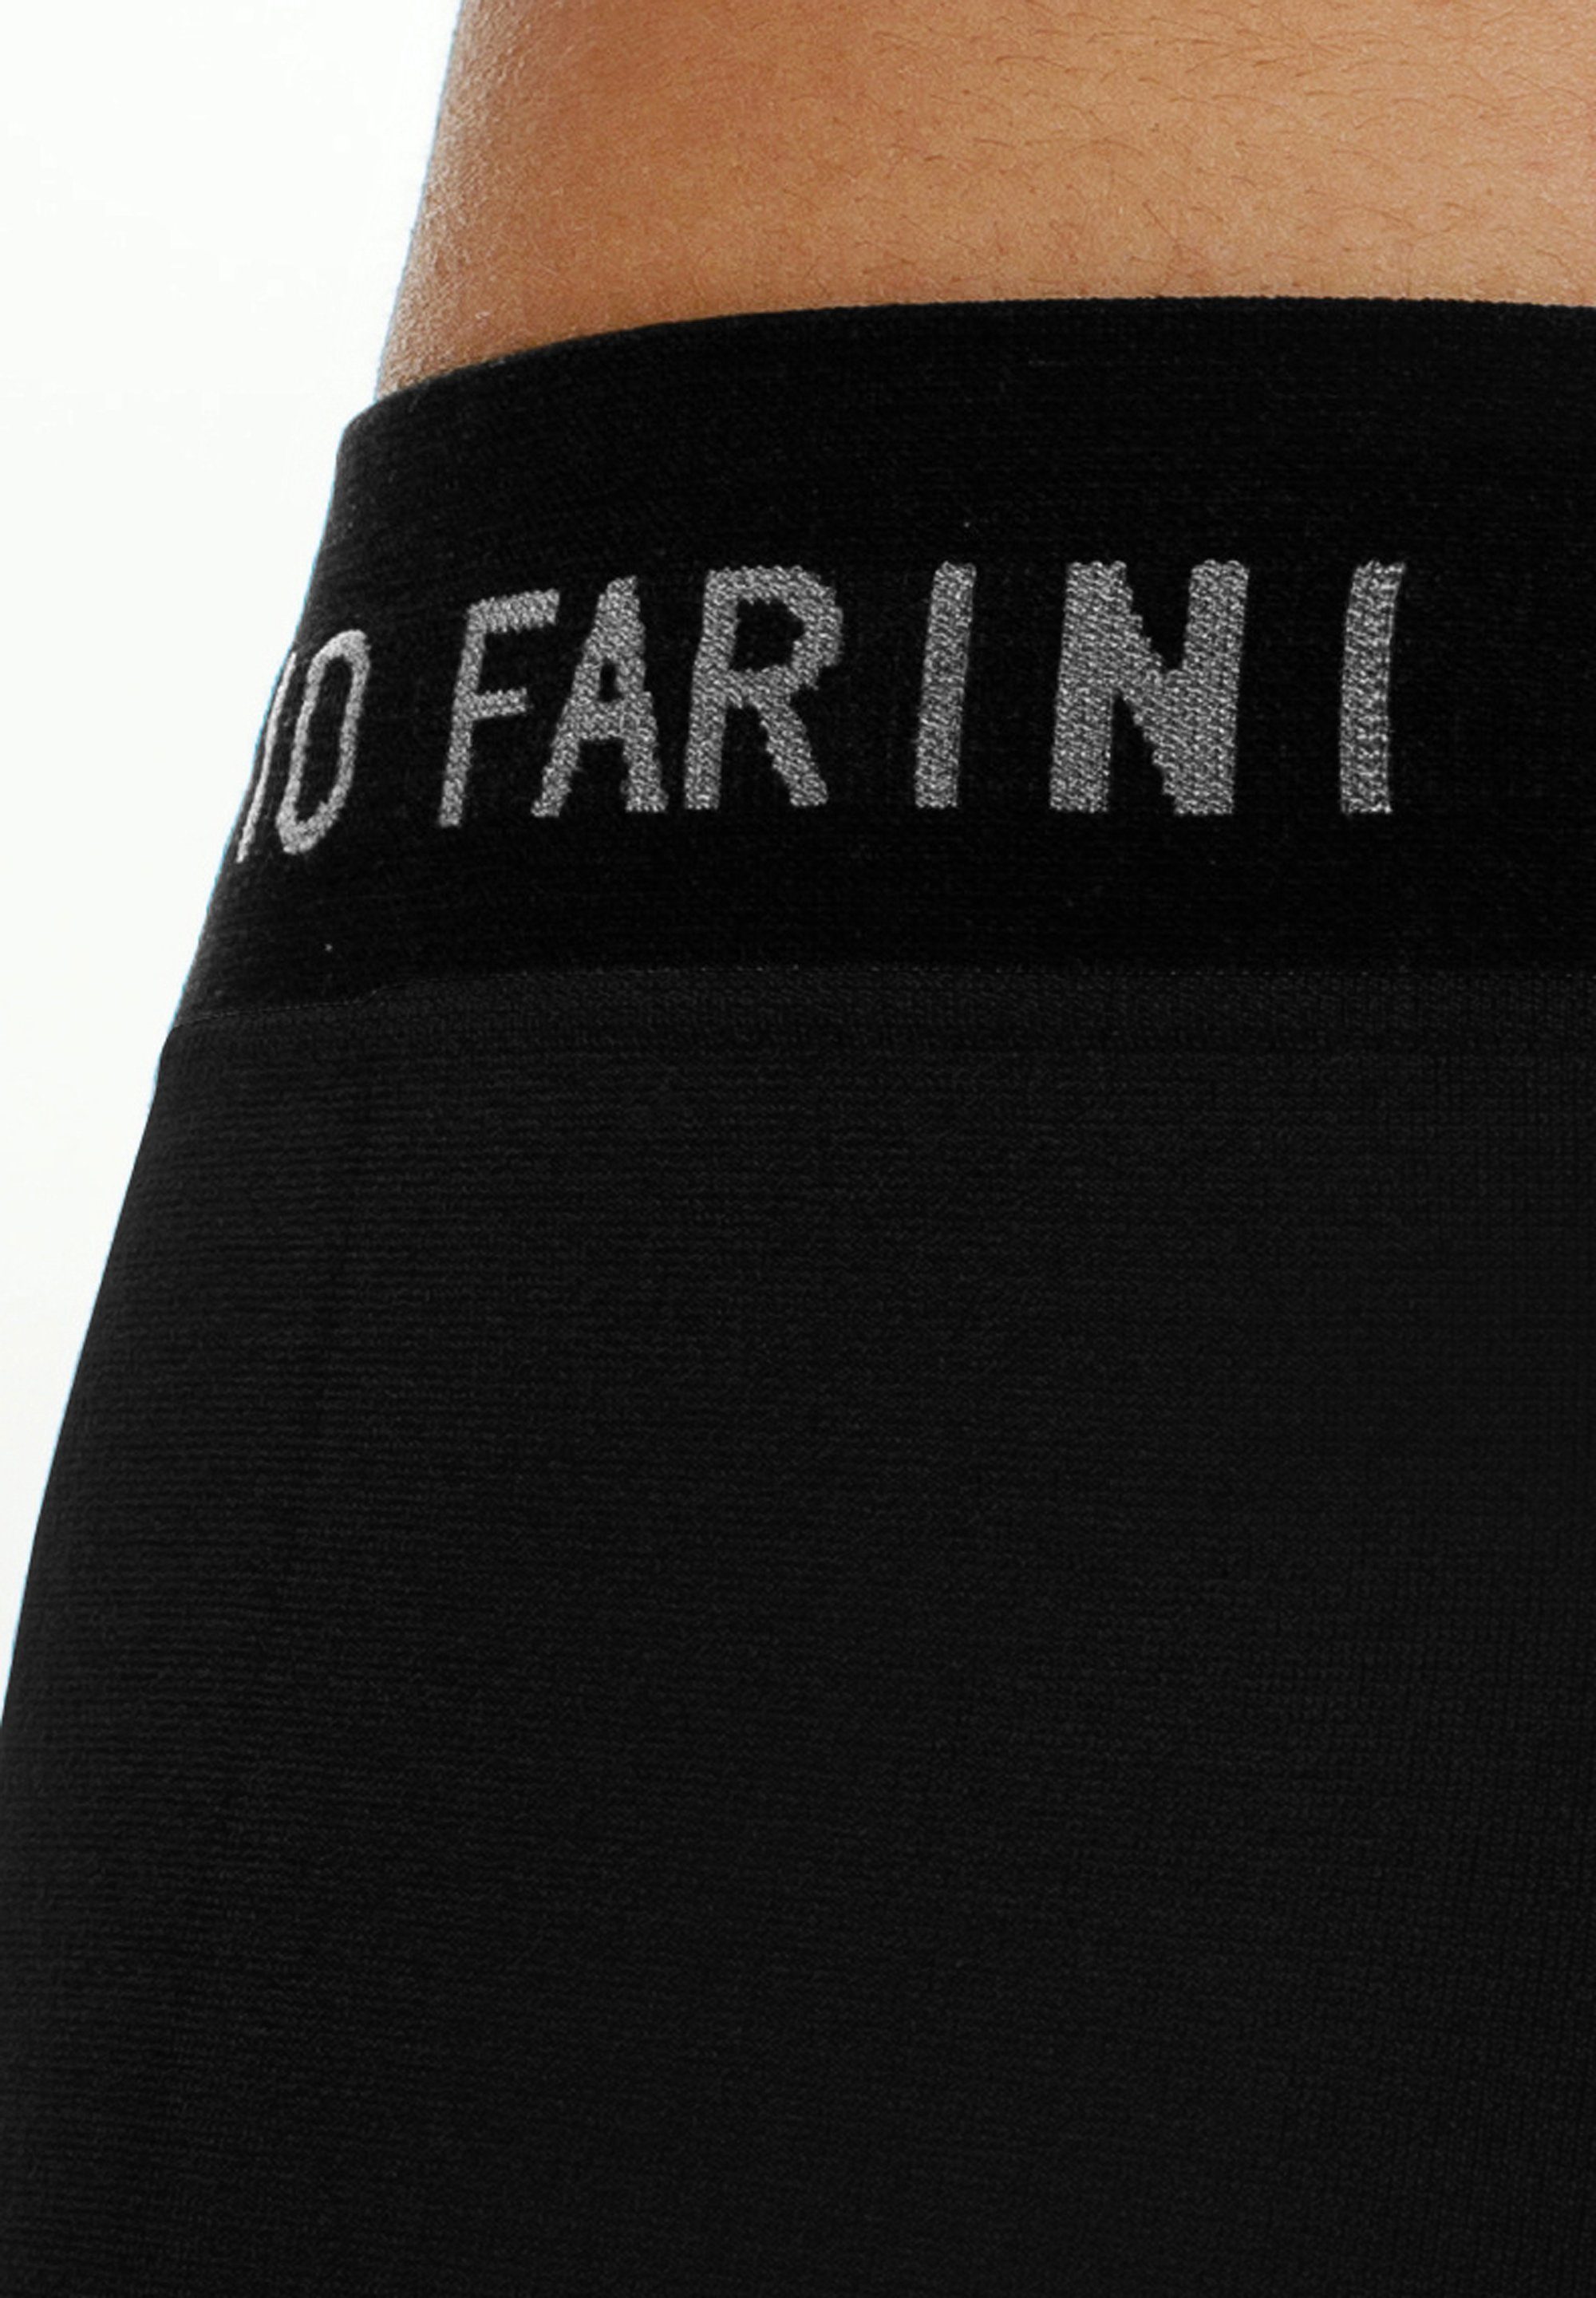 8 sportlichen im aus Farini Fabio Look Männer Set Logoschriftzug mit weicher Microfaser Unterhosen - Herren Retroshorts (4-St) Boxershorts